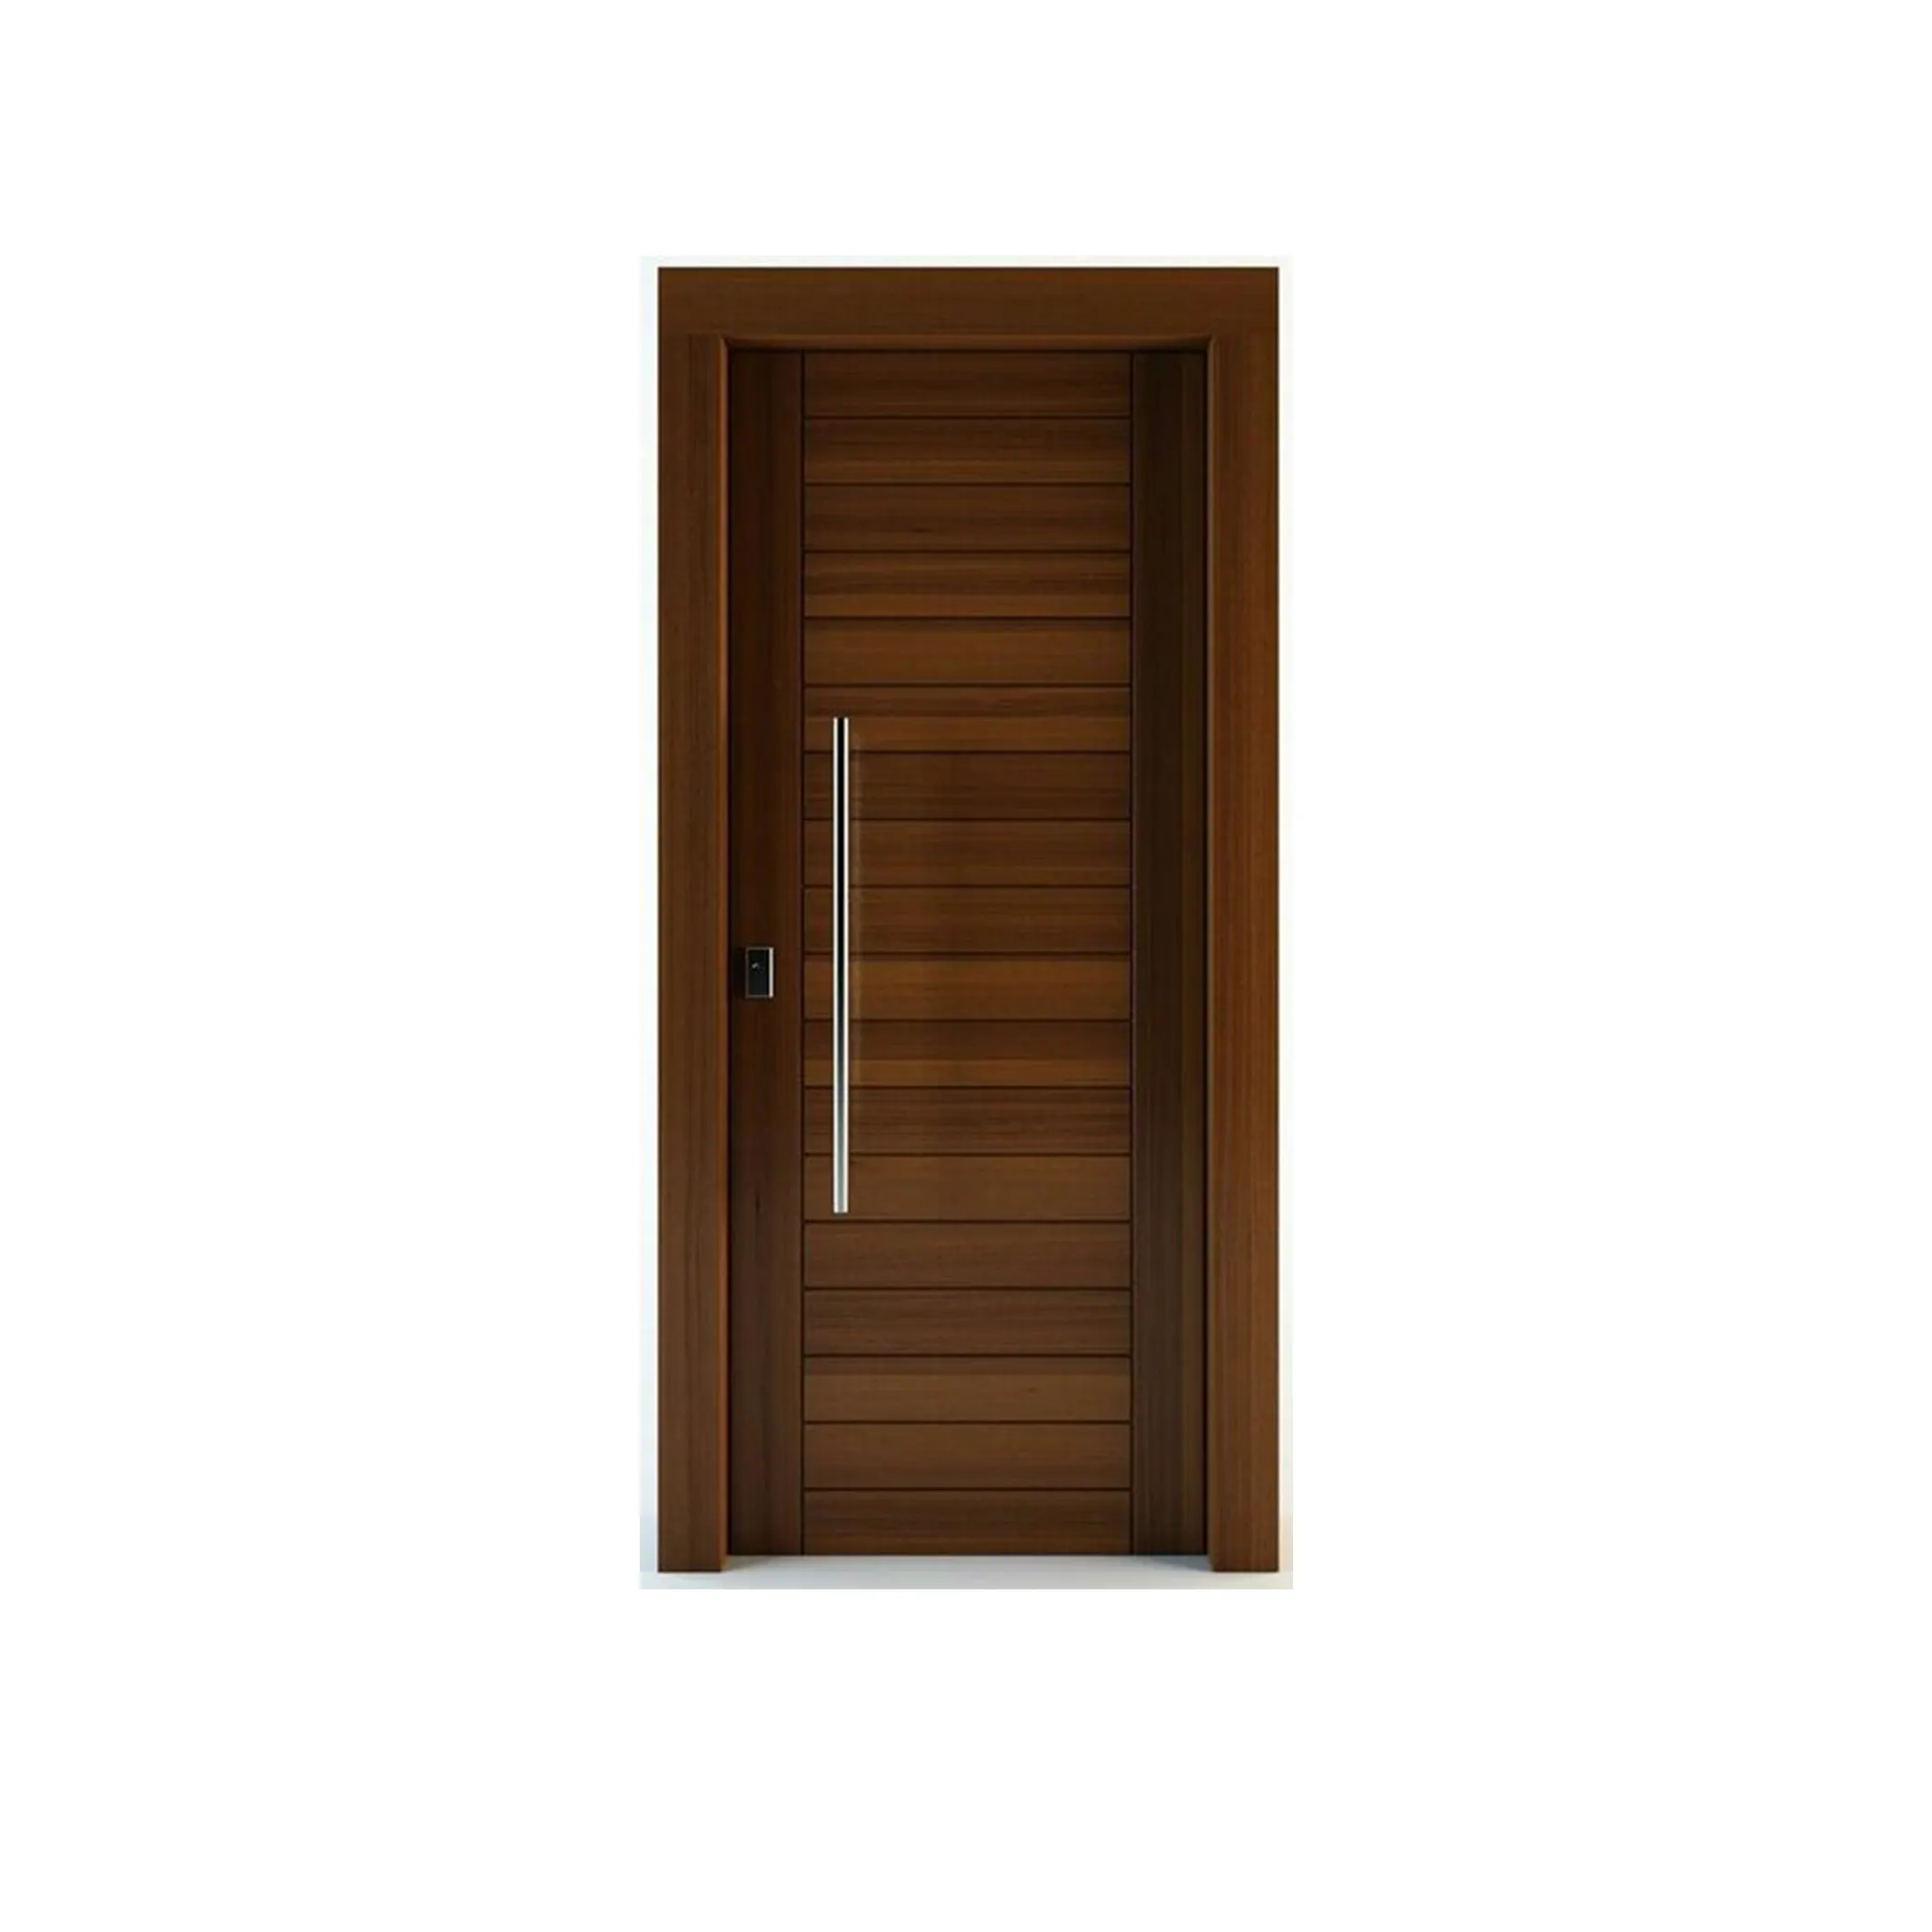 Фабрика по индивидуальному заказу Морден простой геометрический стиль темно-коричневый ручной работы премиальные деревянные фанерные двери для интерьера спальни